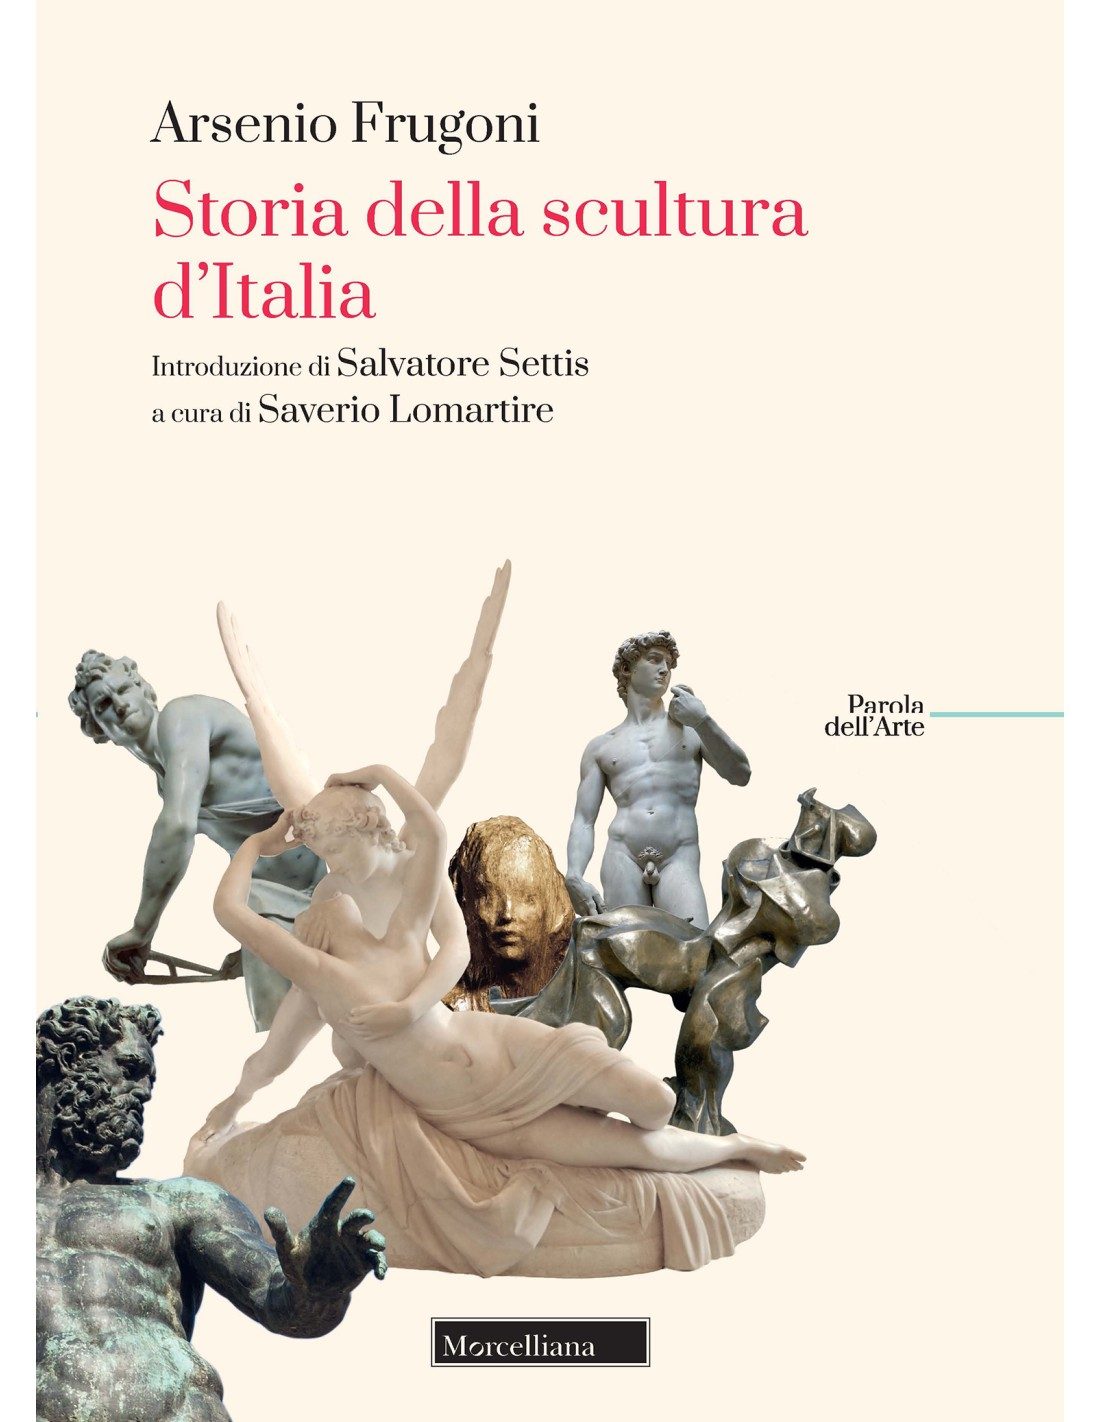 Storia della scultura d'Italia, Frugoni